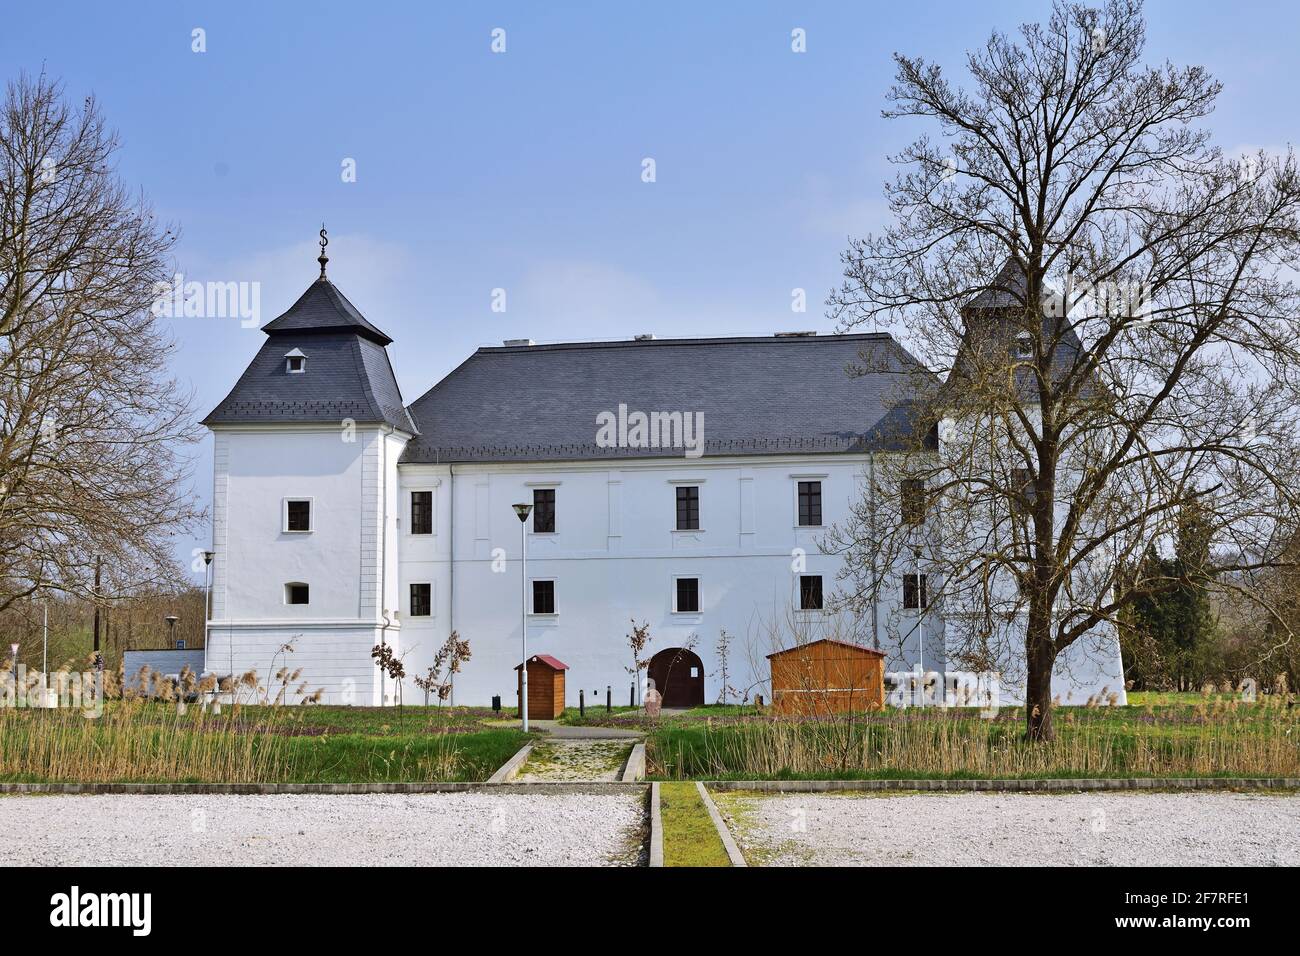 Egervar palazzo rinascimentale nella contea di Zala, Ungheria Foto Stock